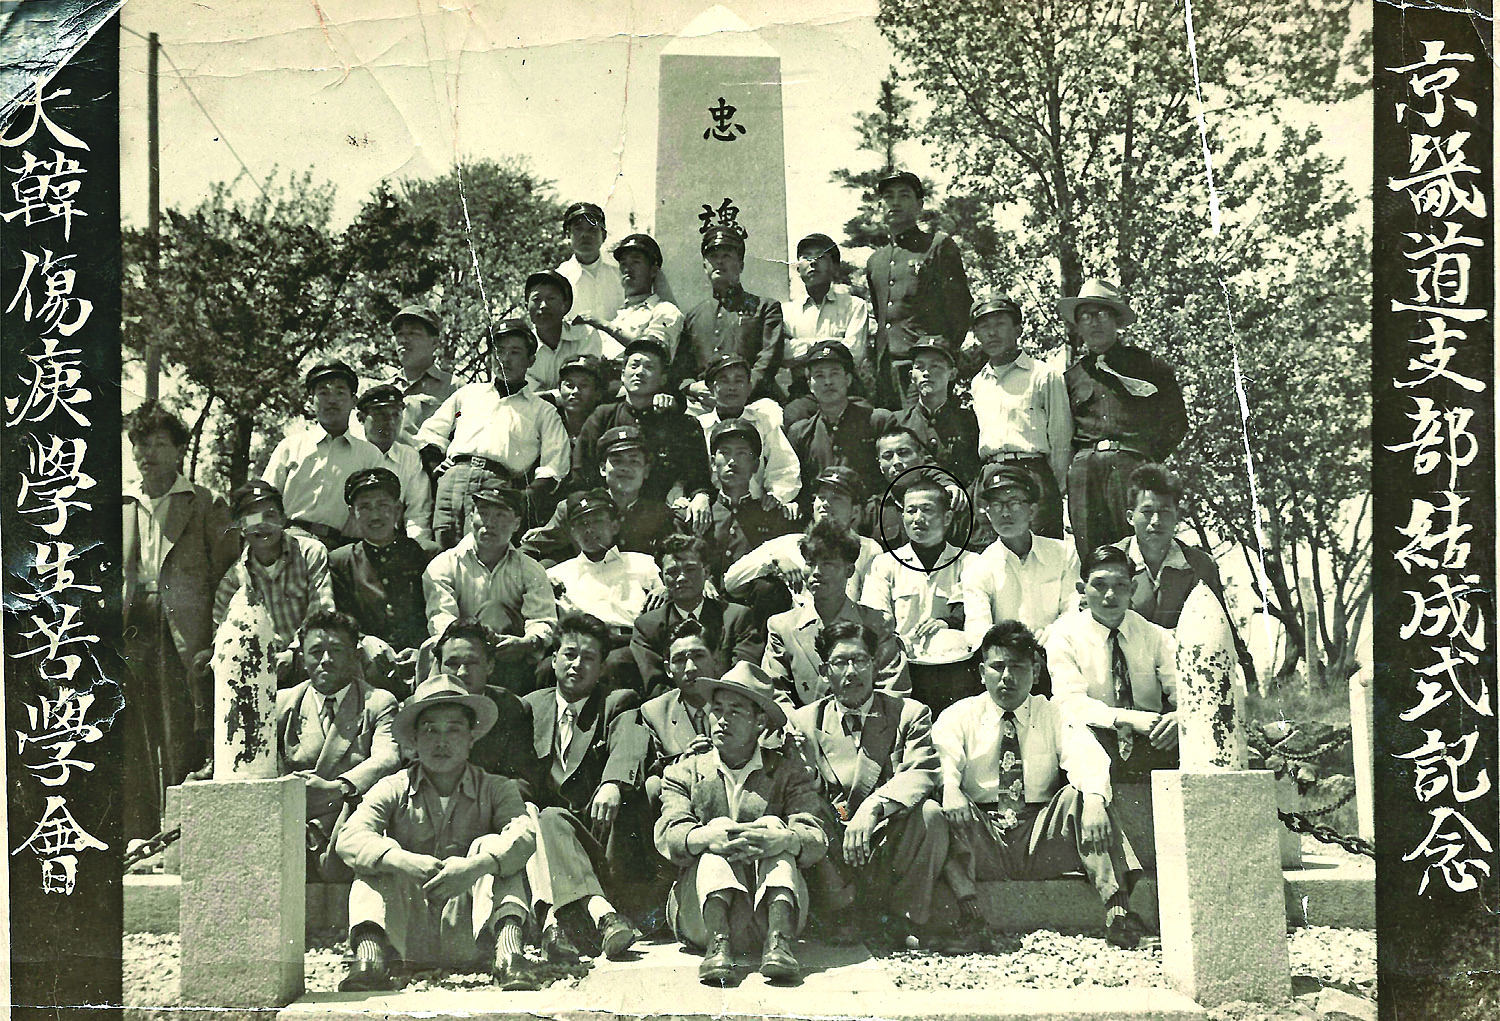 4288년(서기 1955년) 5월 22일 인천자유공원 충혼탑에서 6·25참전 인천학생들이 고학생이 되어 참전을 기억하며 찍은 사진. 백재익(검정 원).